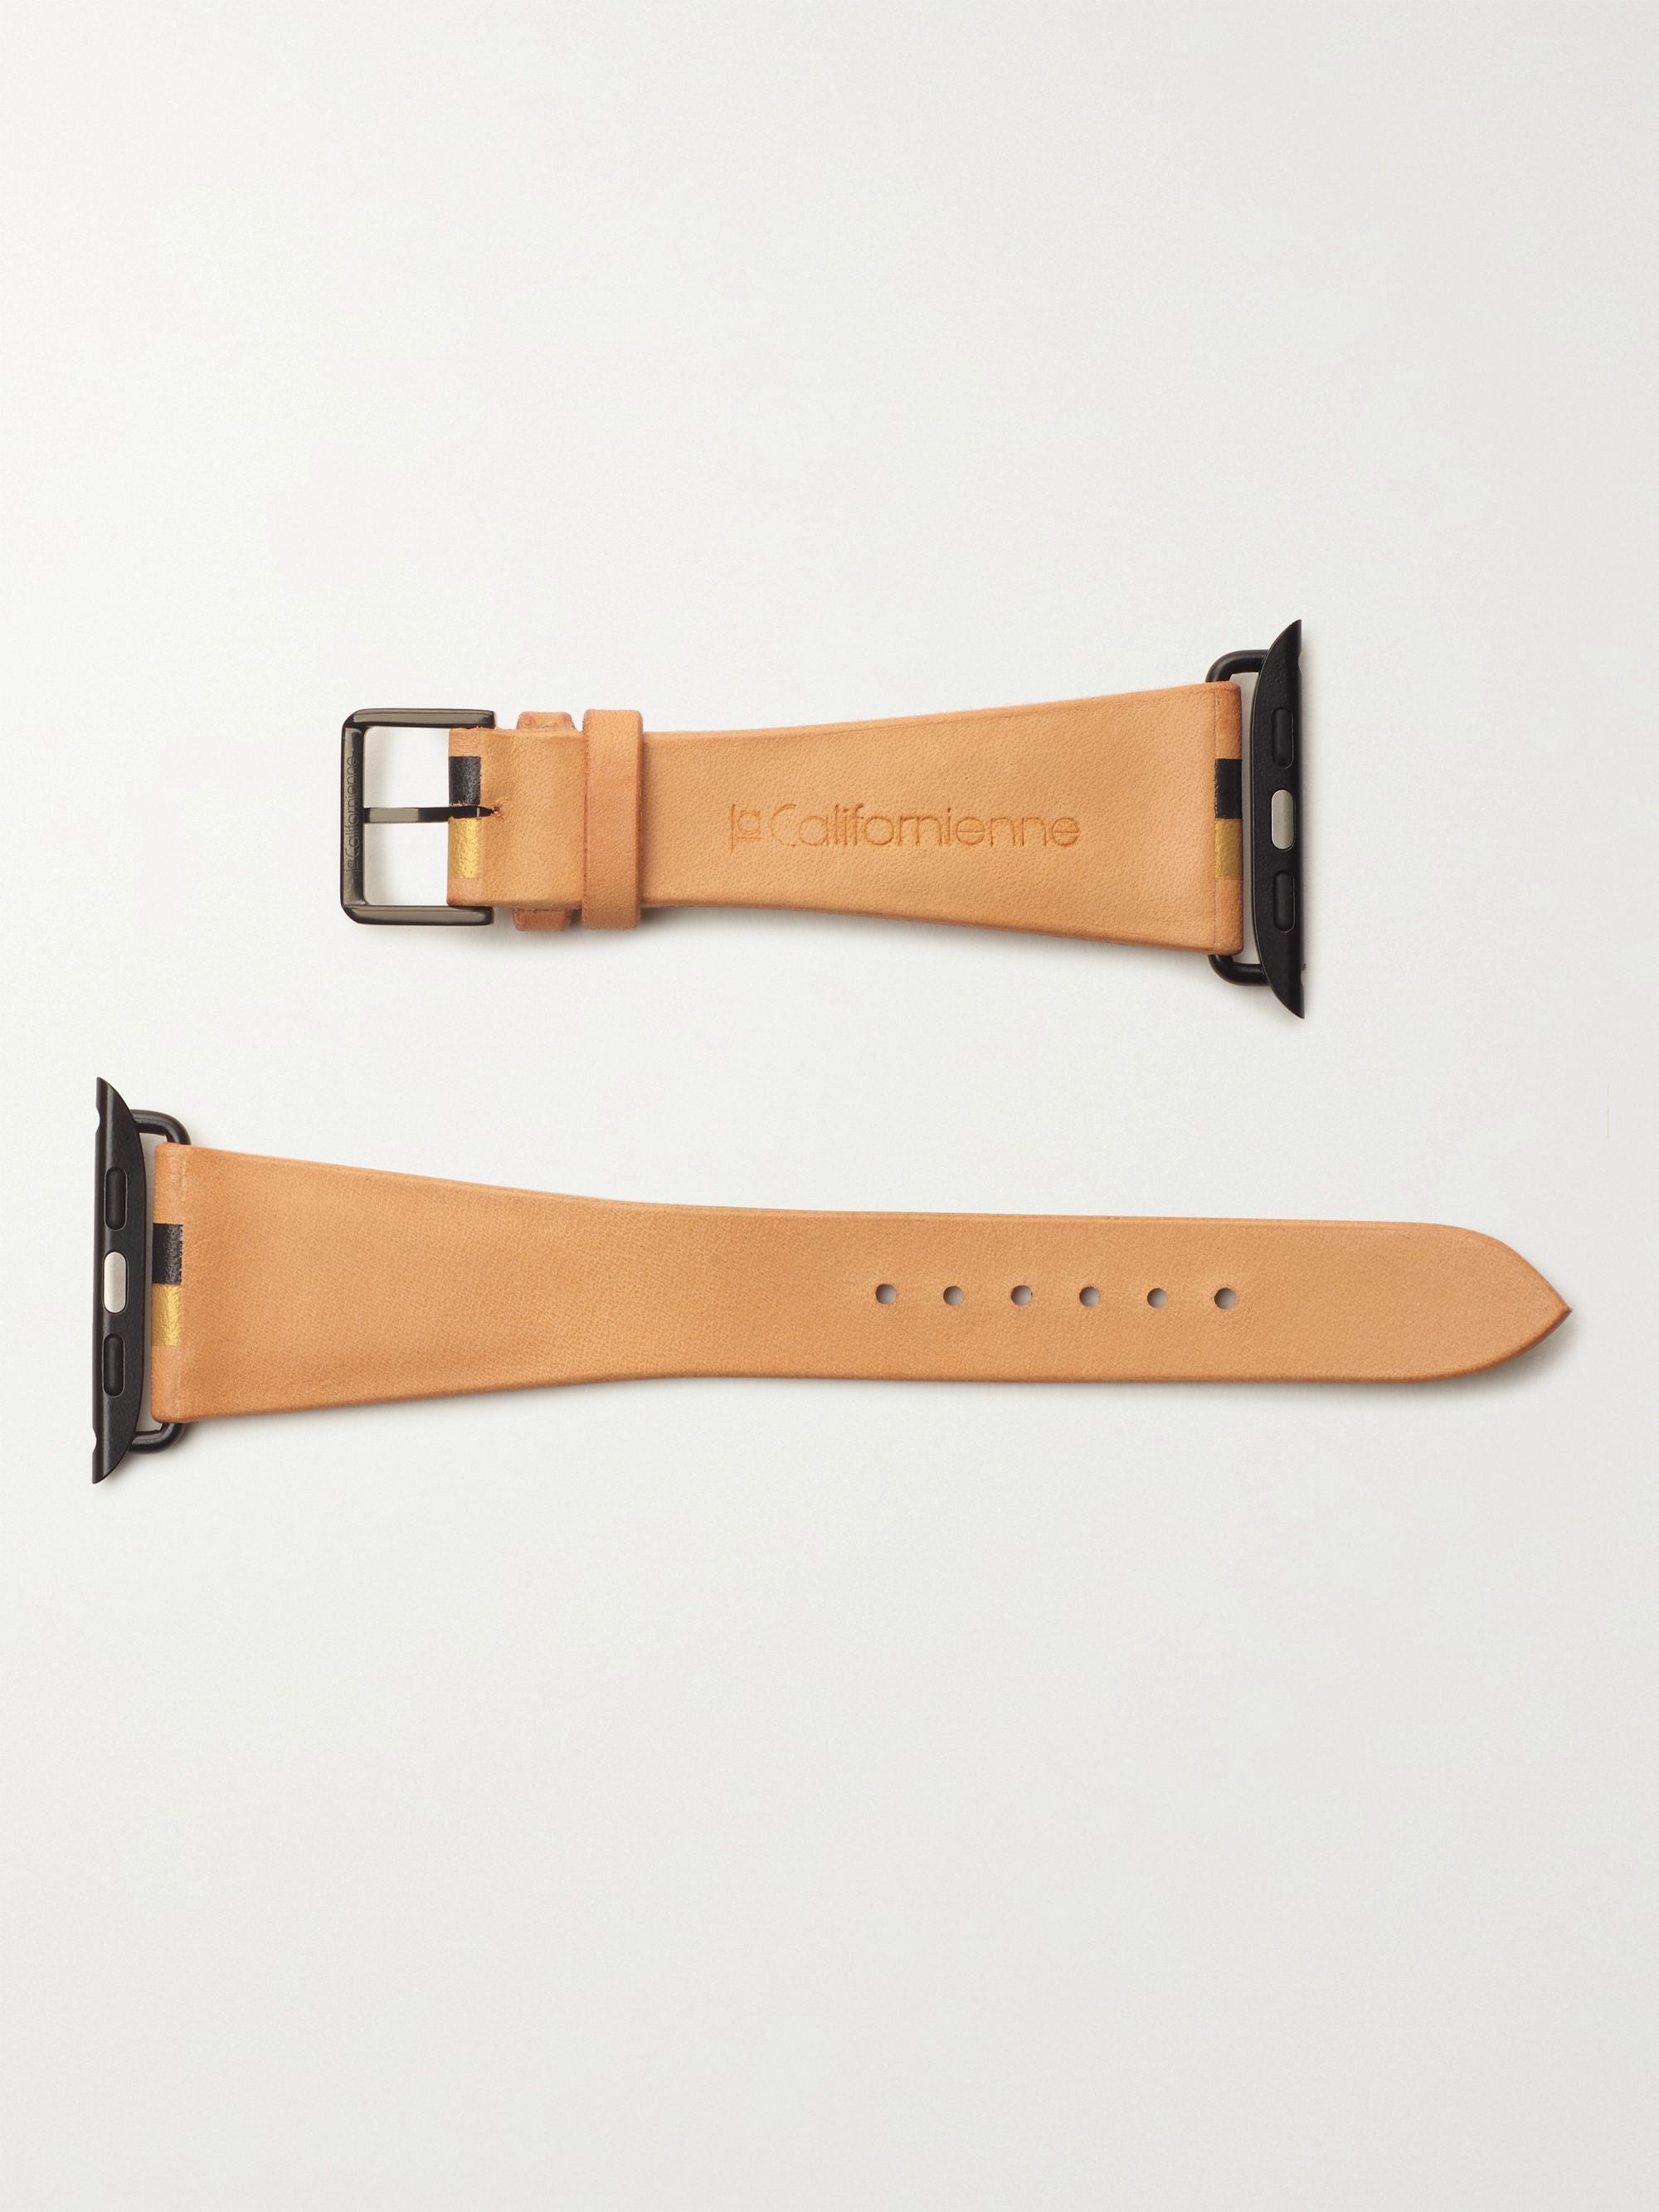 LA CALIFORNIENNE Roxy Striped Leather Watch Strap